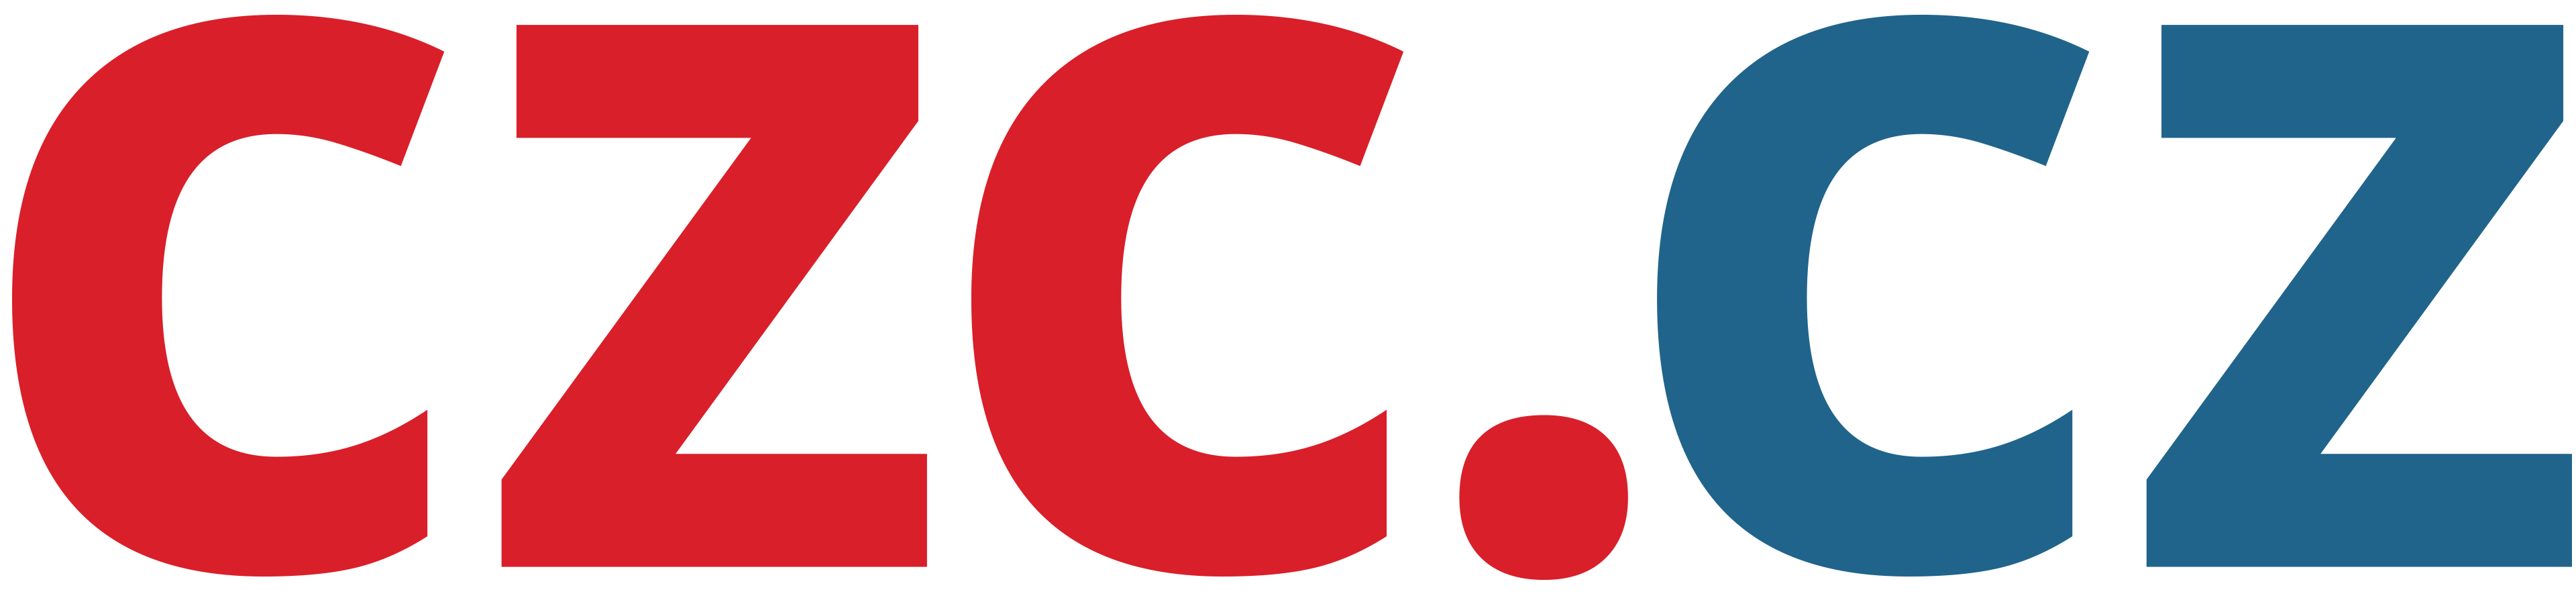 Logo CZC.CZ